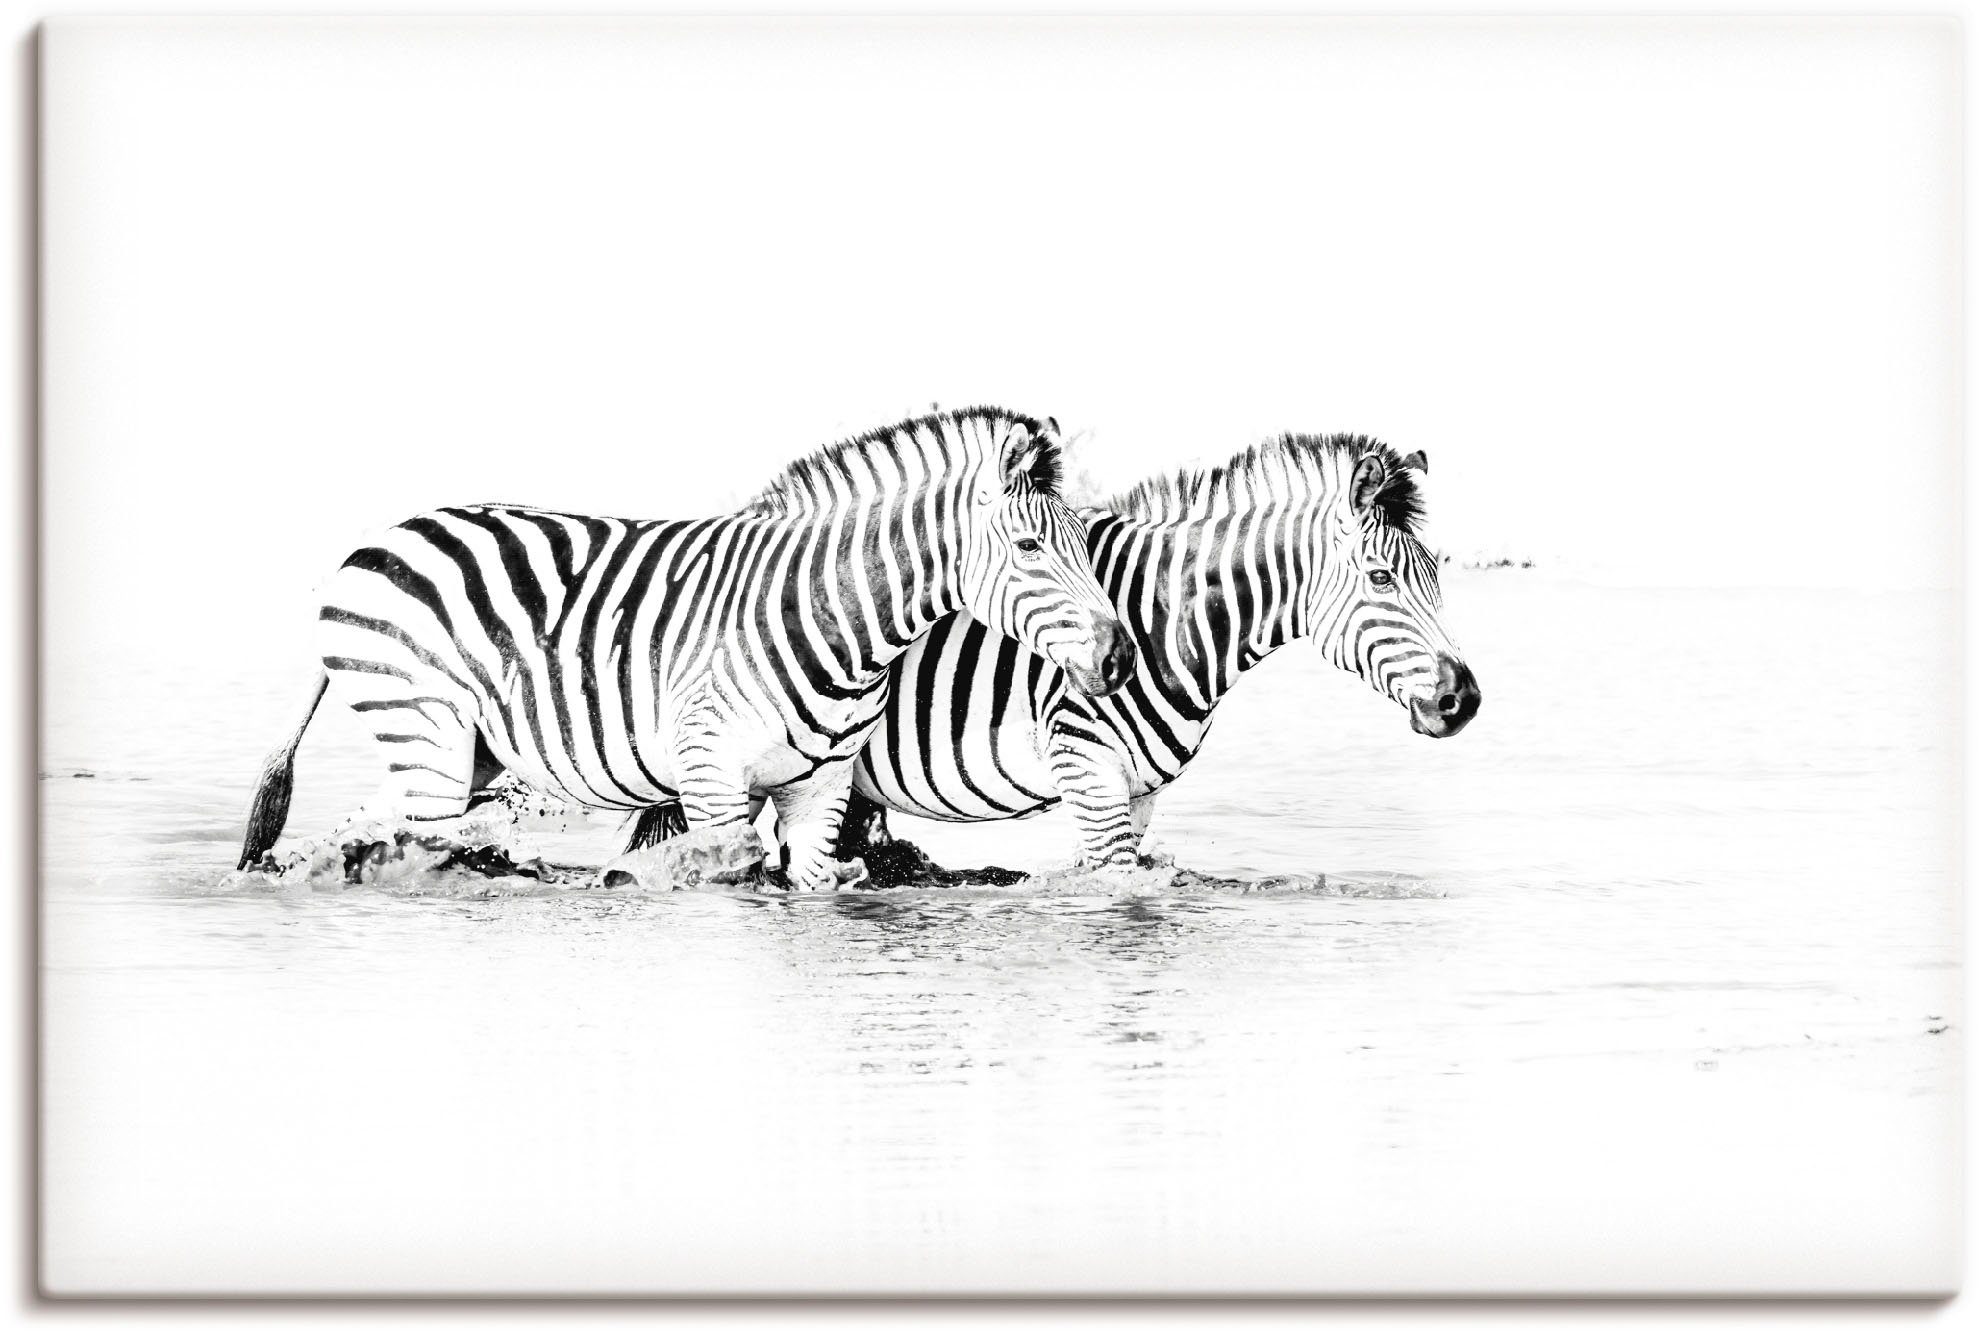 Artland Artprint Zebras parallel im Wasser in vele afmetingen & productsoorten - artprint van aluminium / artprint voor buiten, artprint op linnen, poster, muursticker / wandfolie